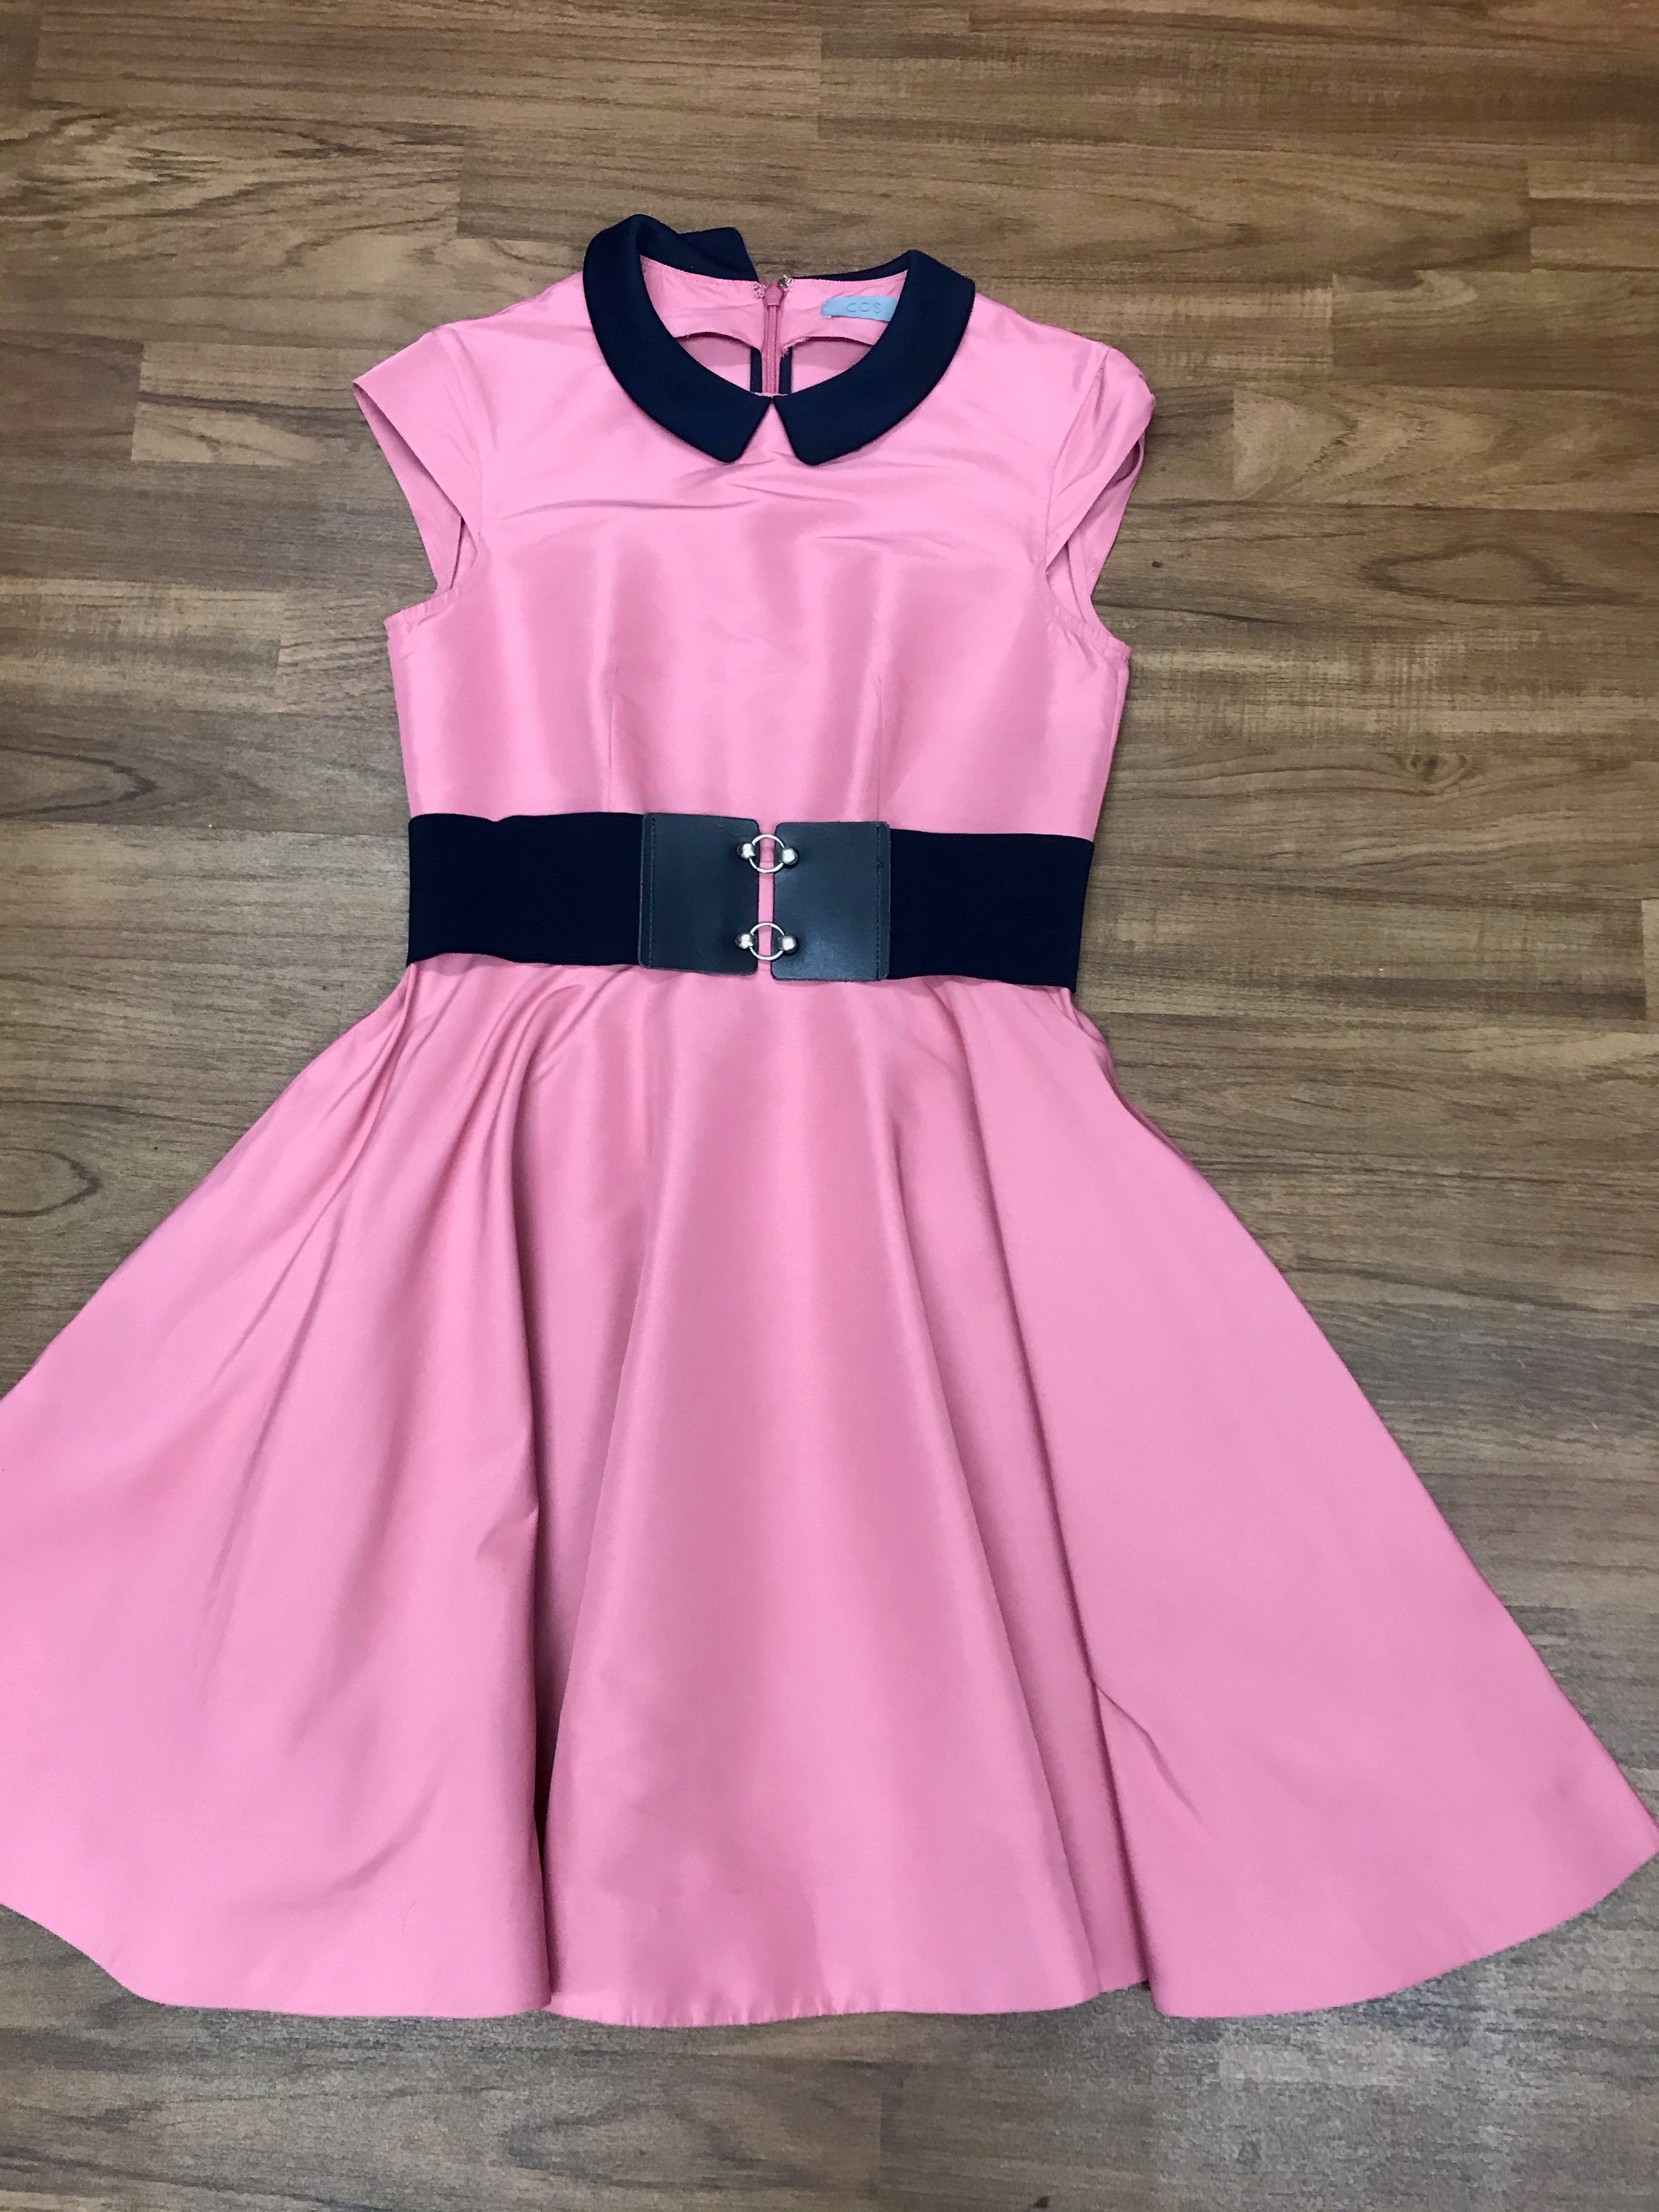 Vintage Kleid im 50er Jahre Stil 4teilig Gr.34